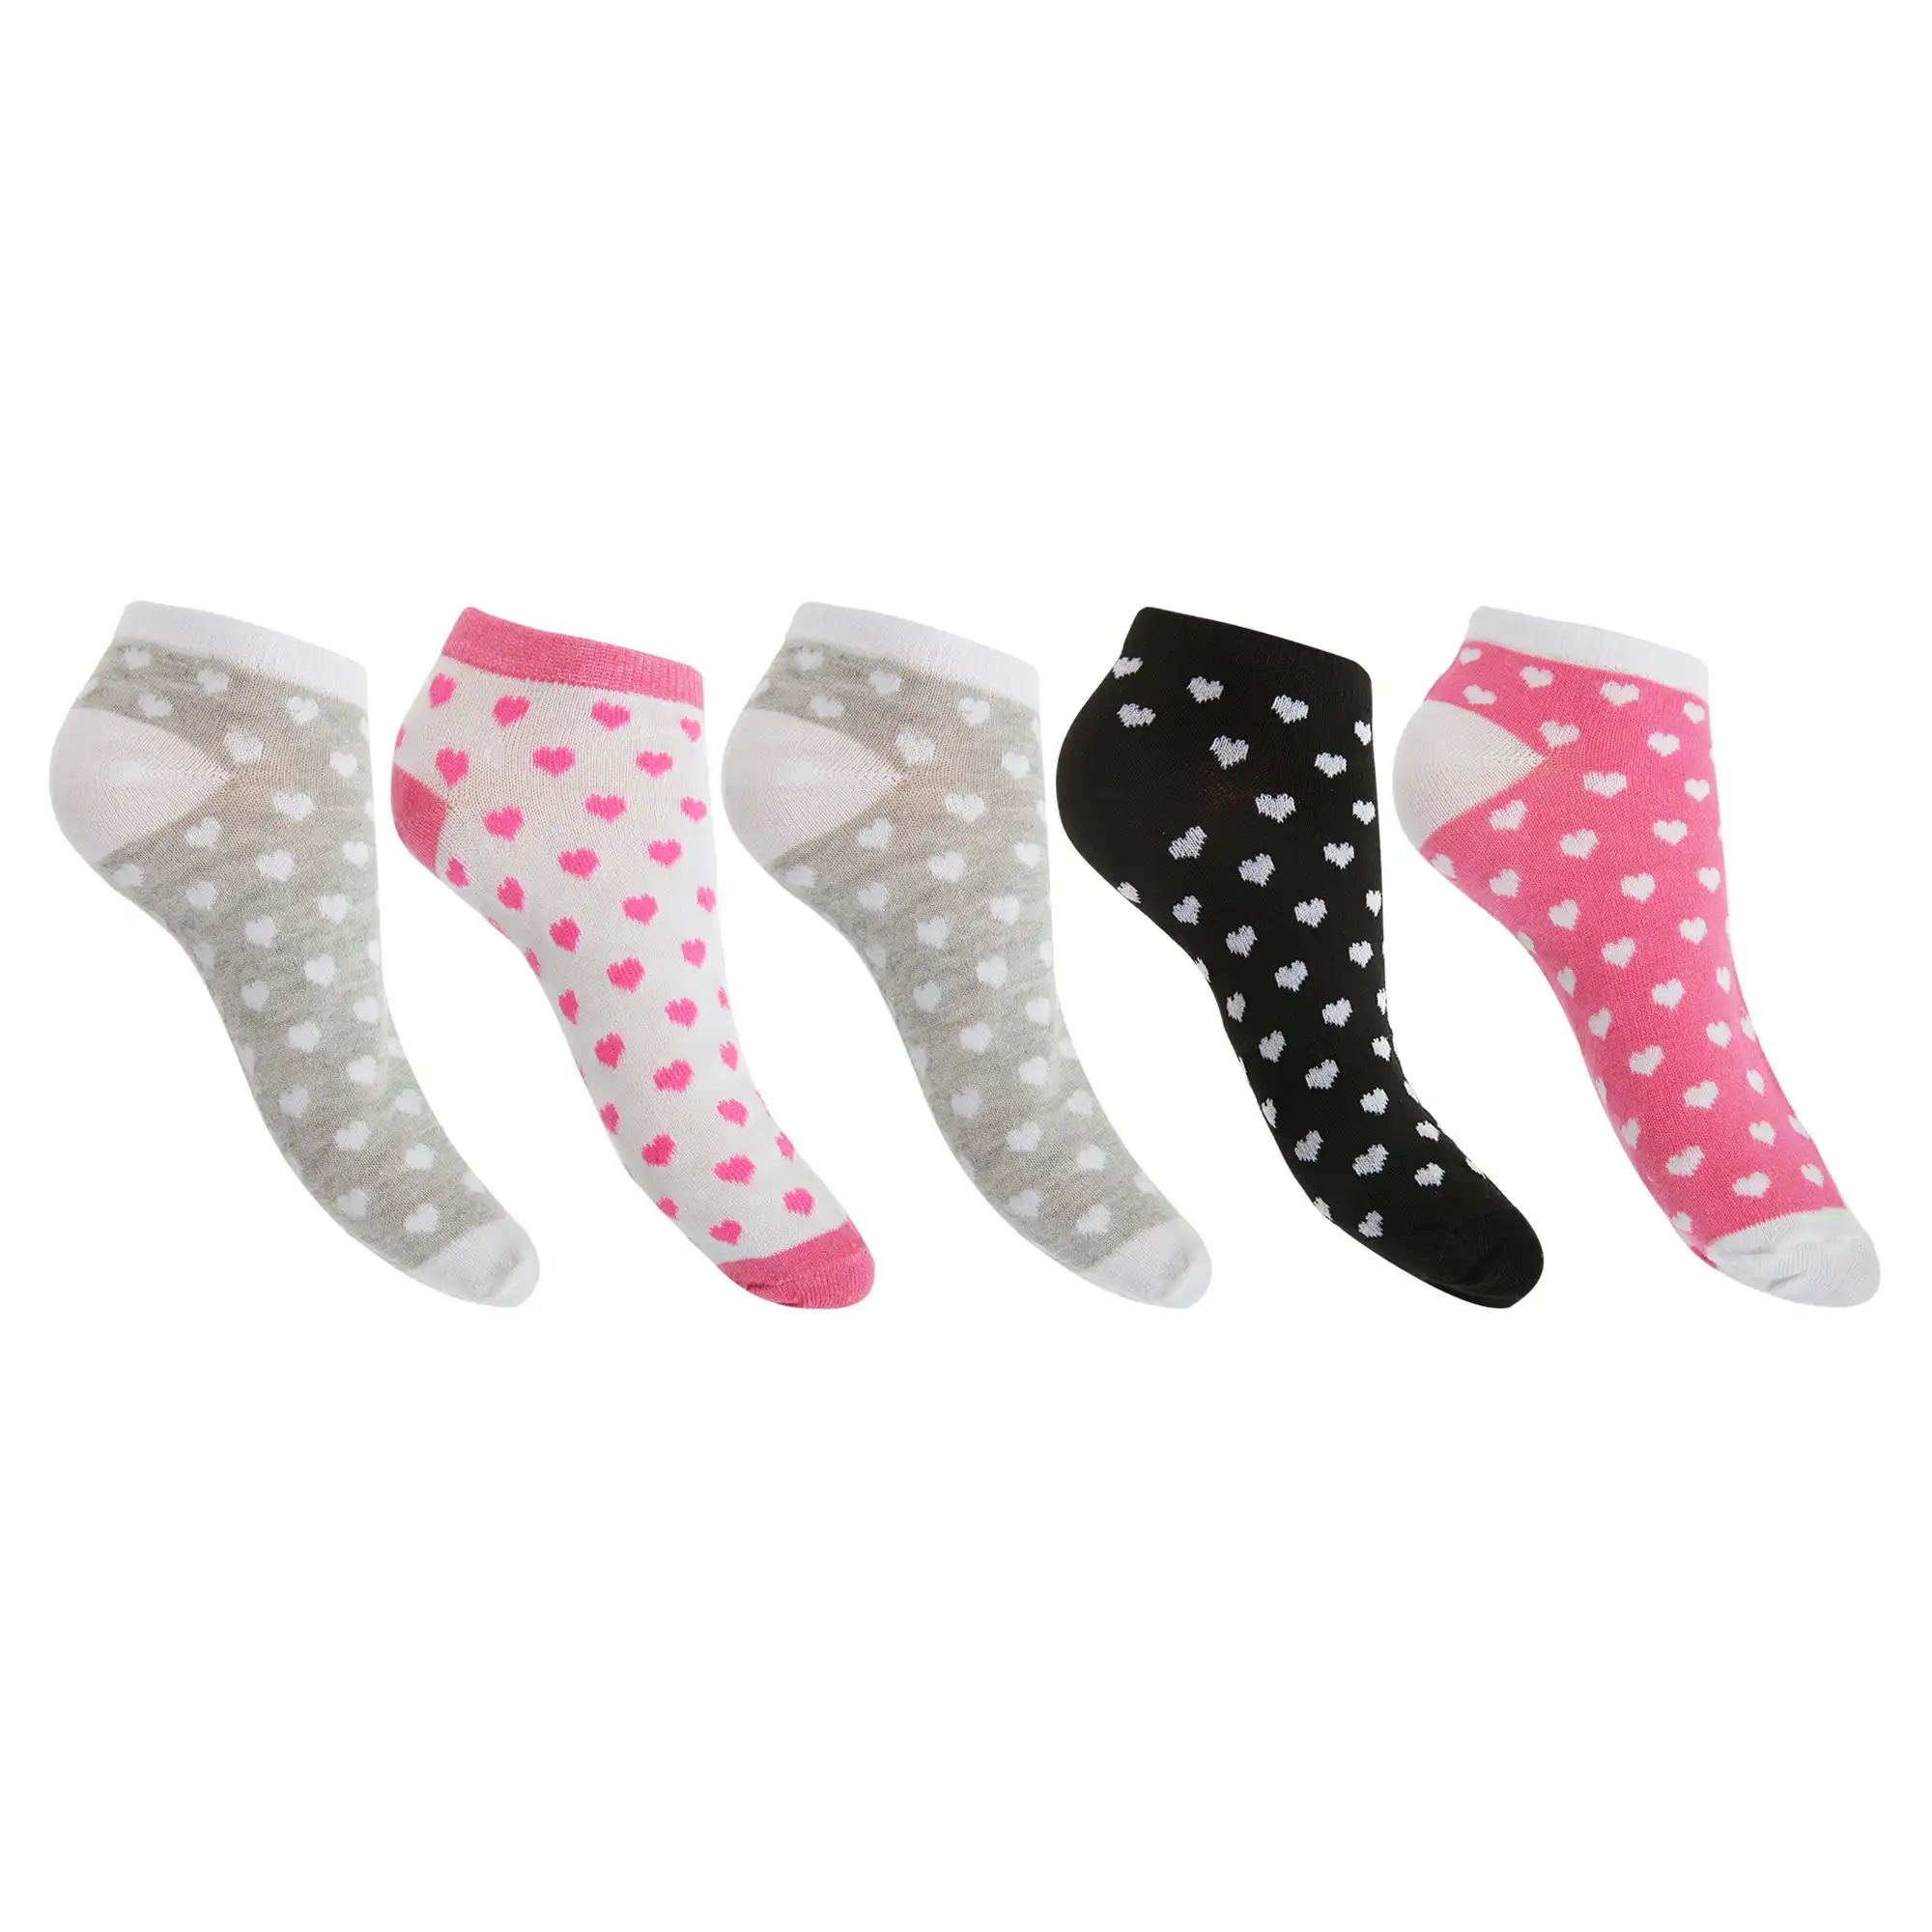 Floso Womens/Ladies Trainer Socks (Pack Of 5)